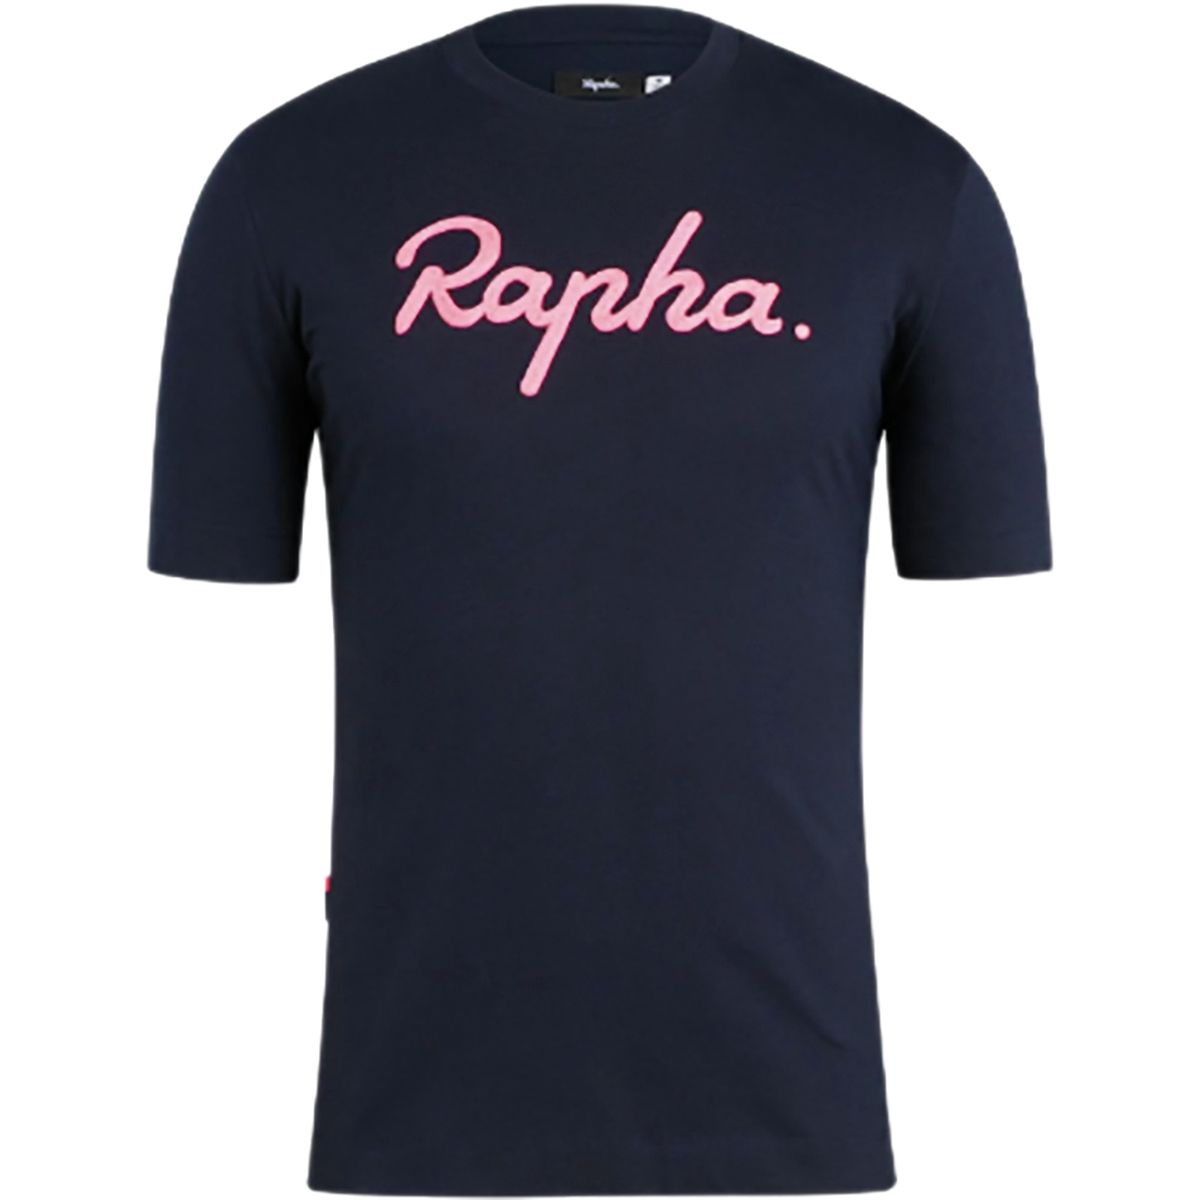 Rapha Logo T-Shirt - Men's